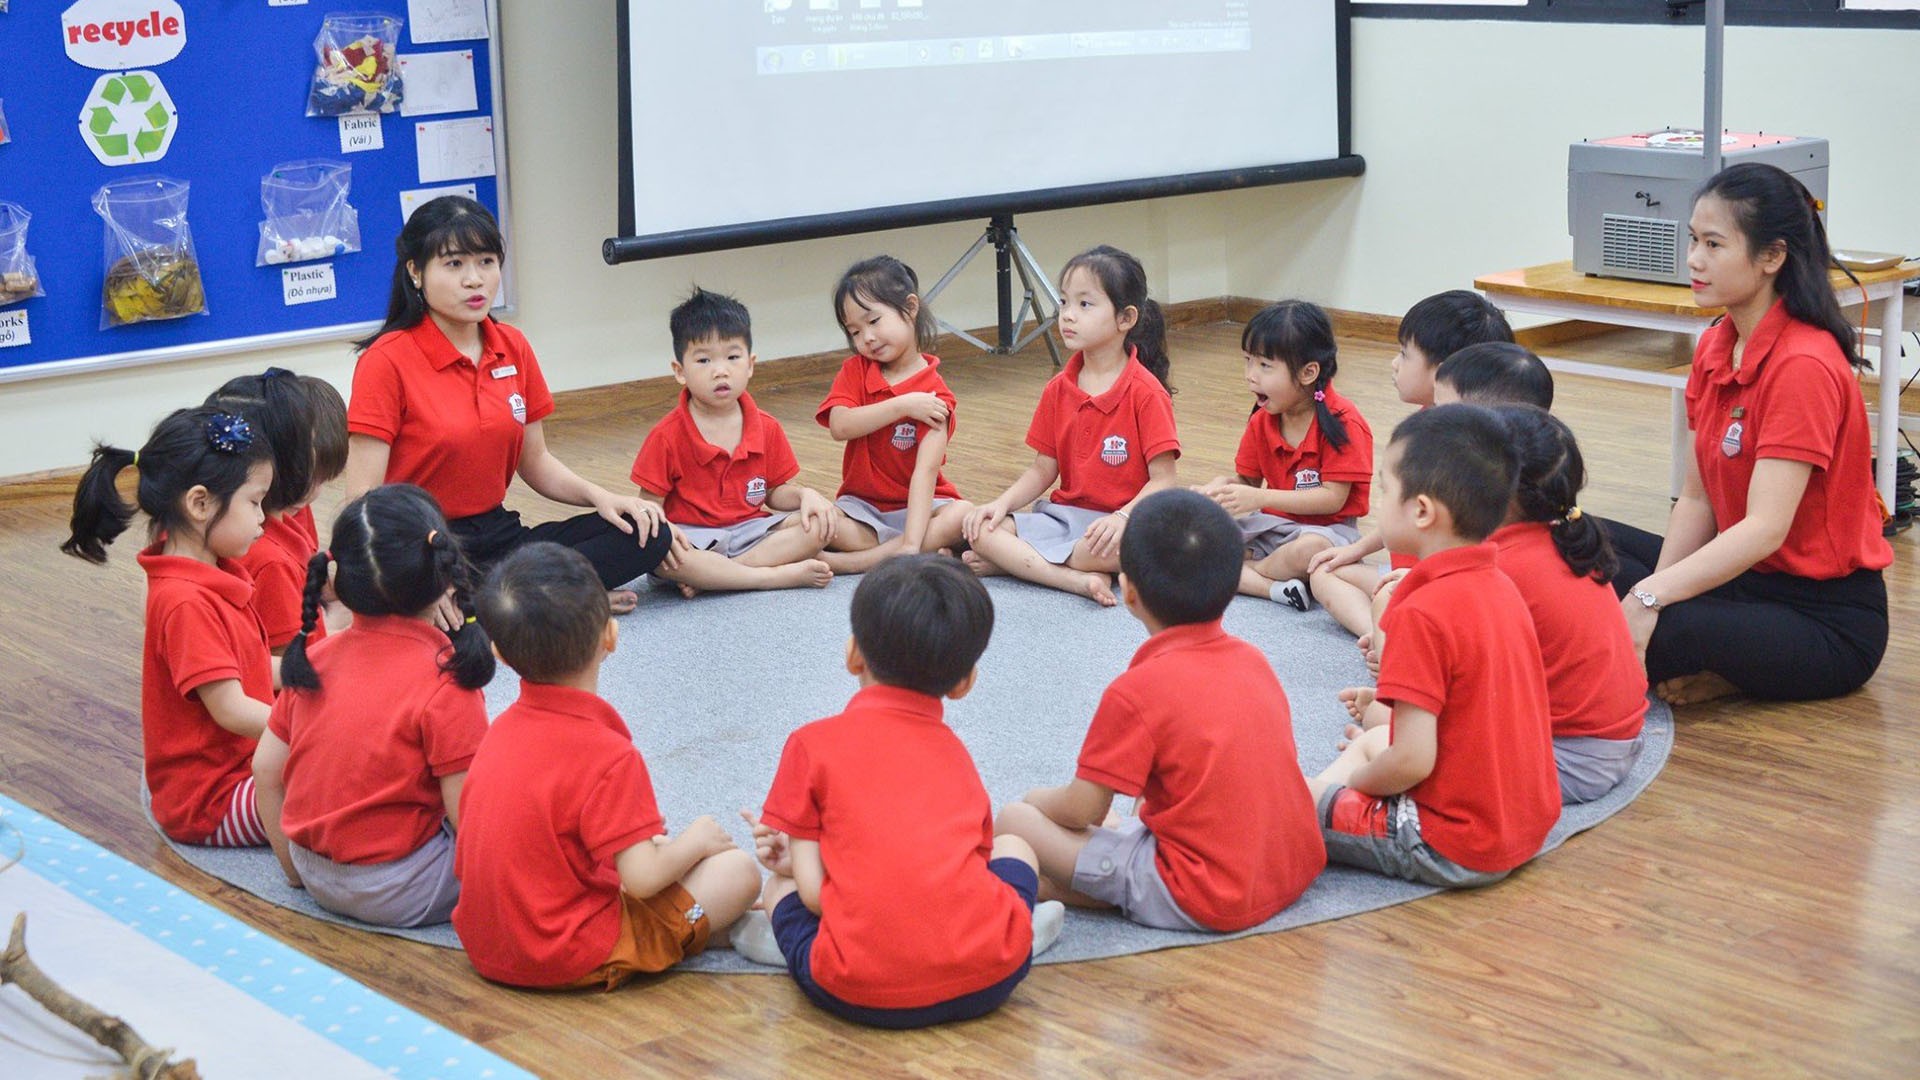 5 lý do phụ huynh nên lựa chọn Hanoi Academy cho con